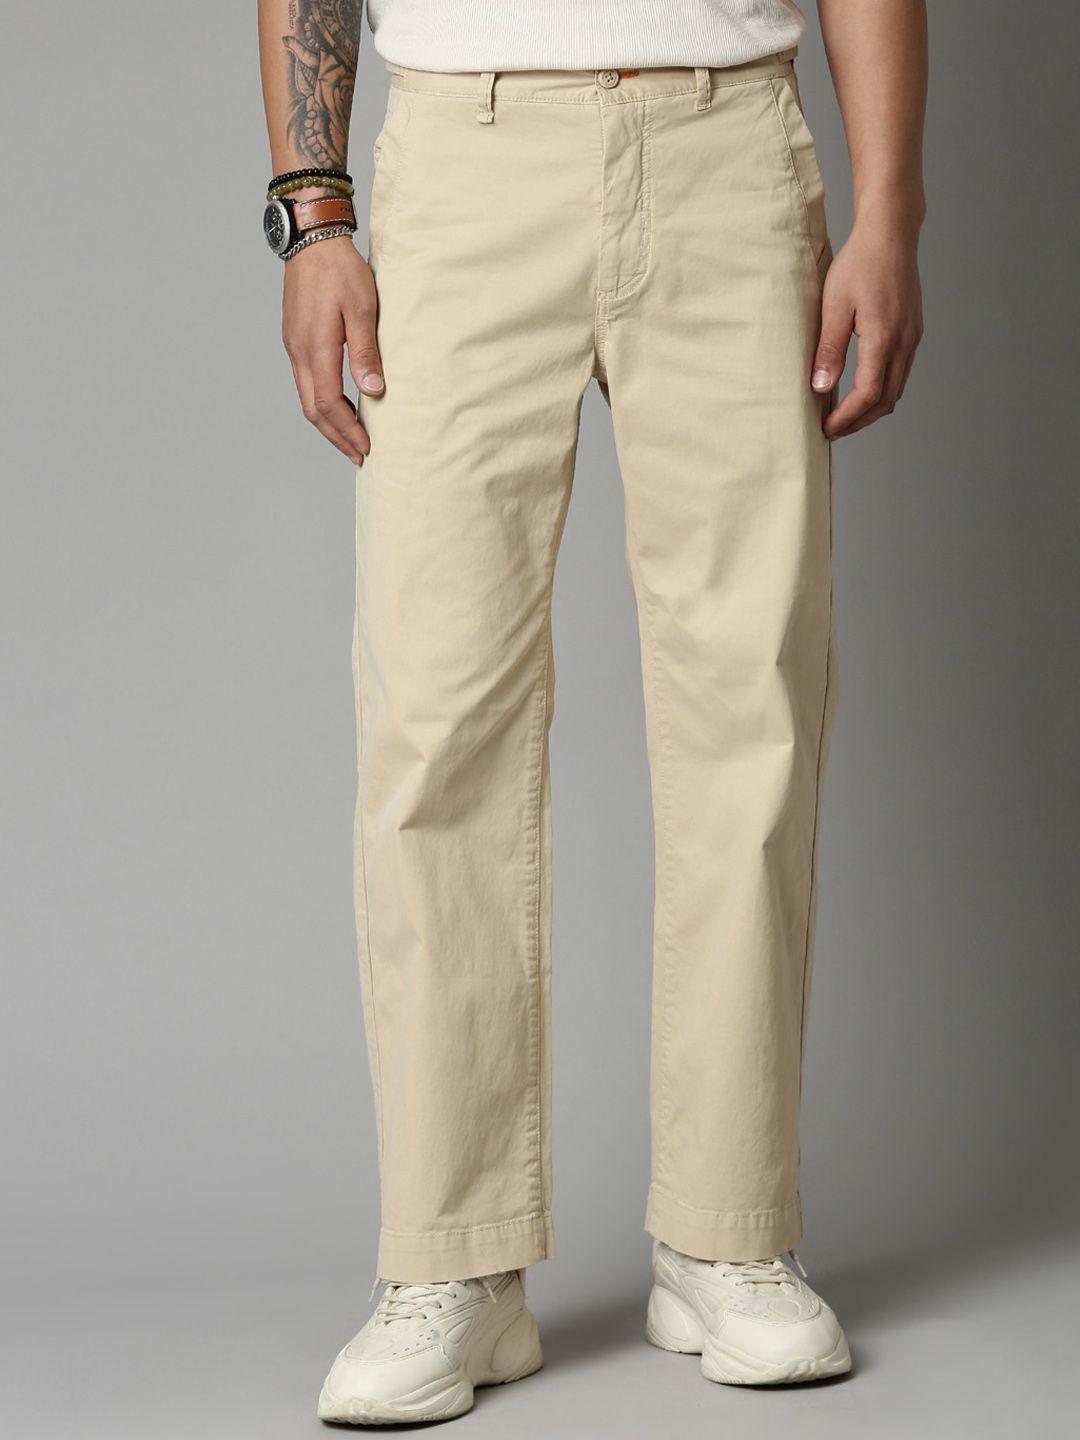 breakbounce-men-beige-comfort-straight-fit-trousers